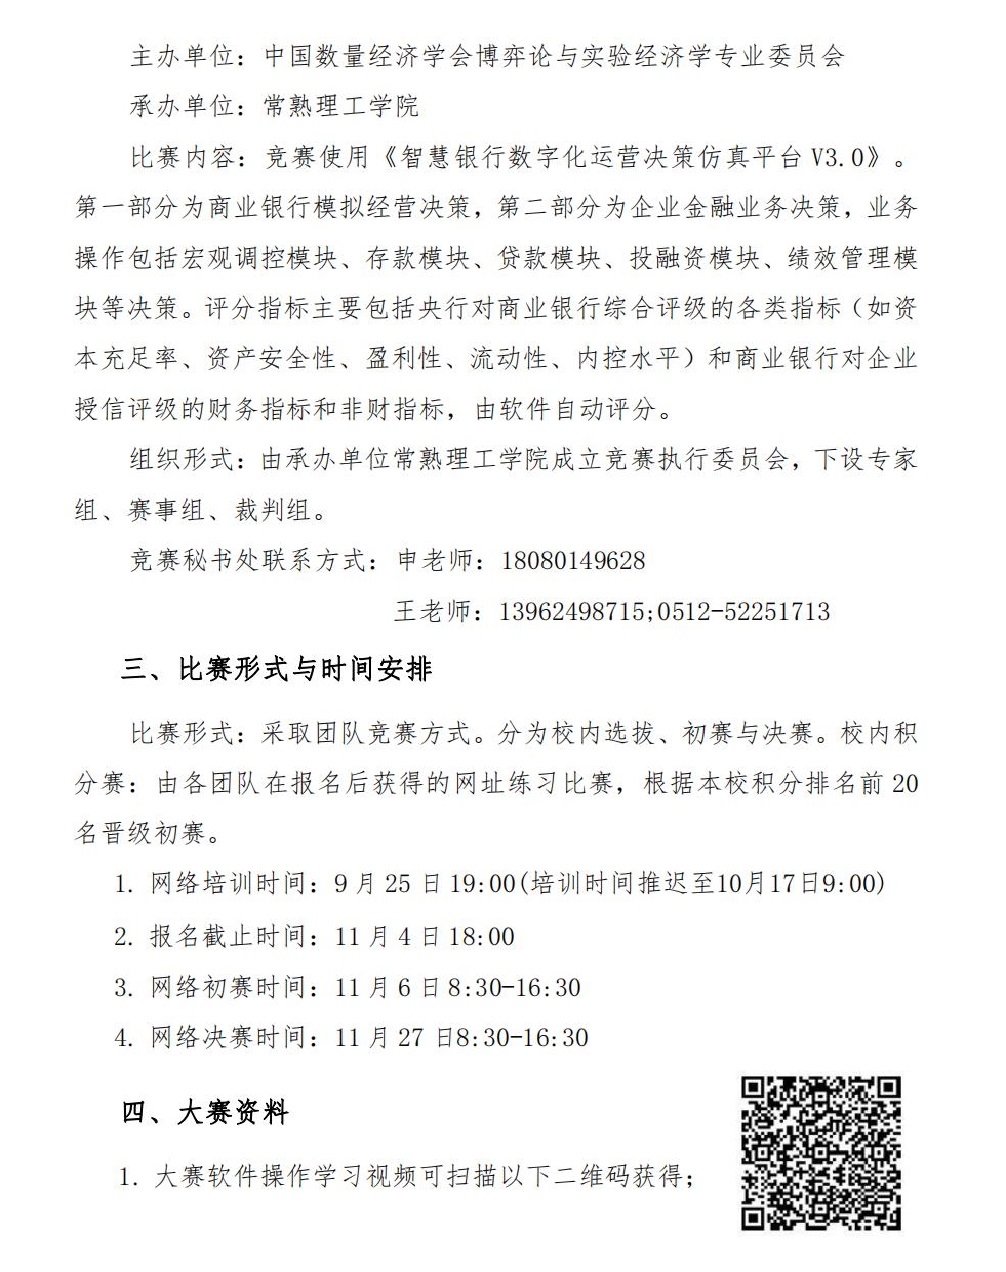 2021年（第二届）江苏省智慧银行数字化运营大赛-决赛为网络比赛_01.jpg